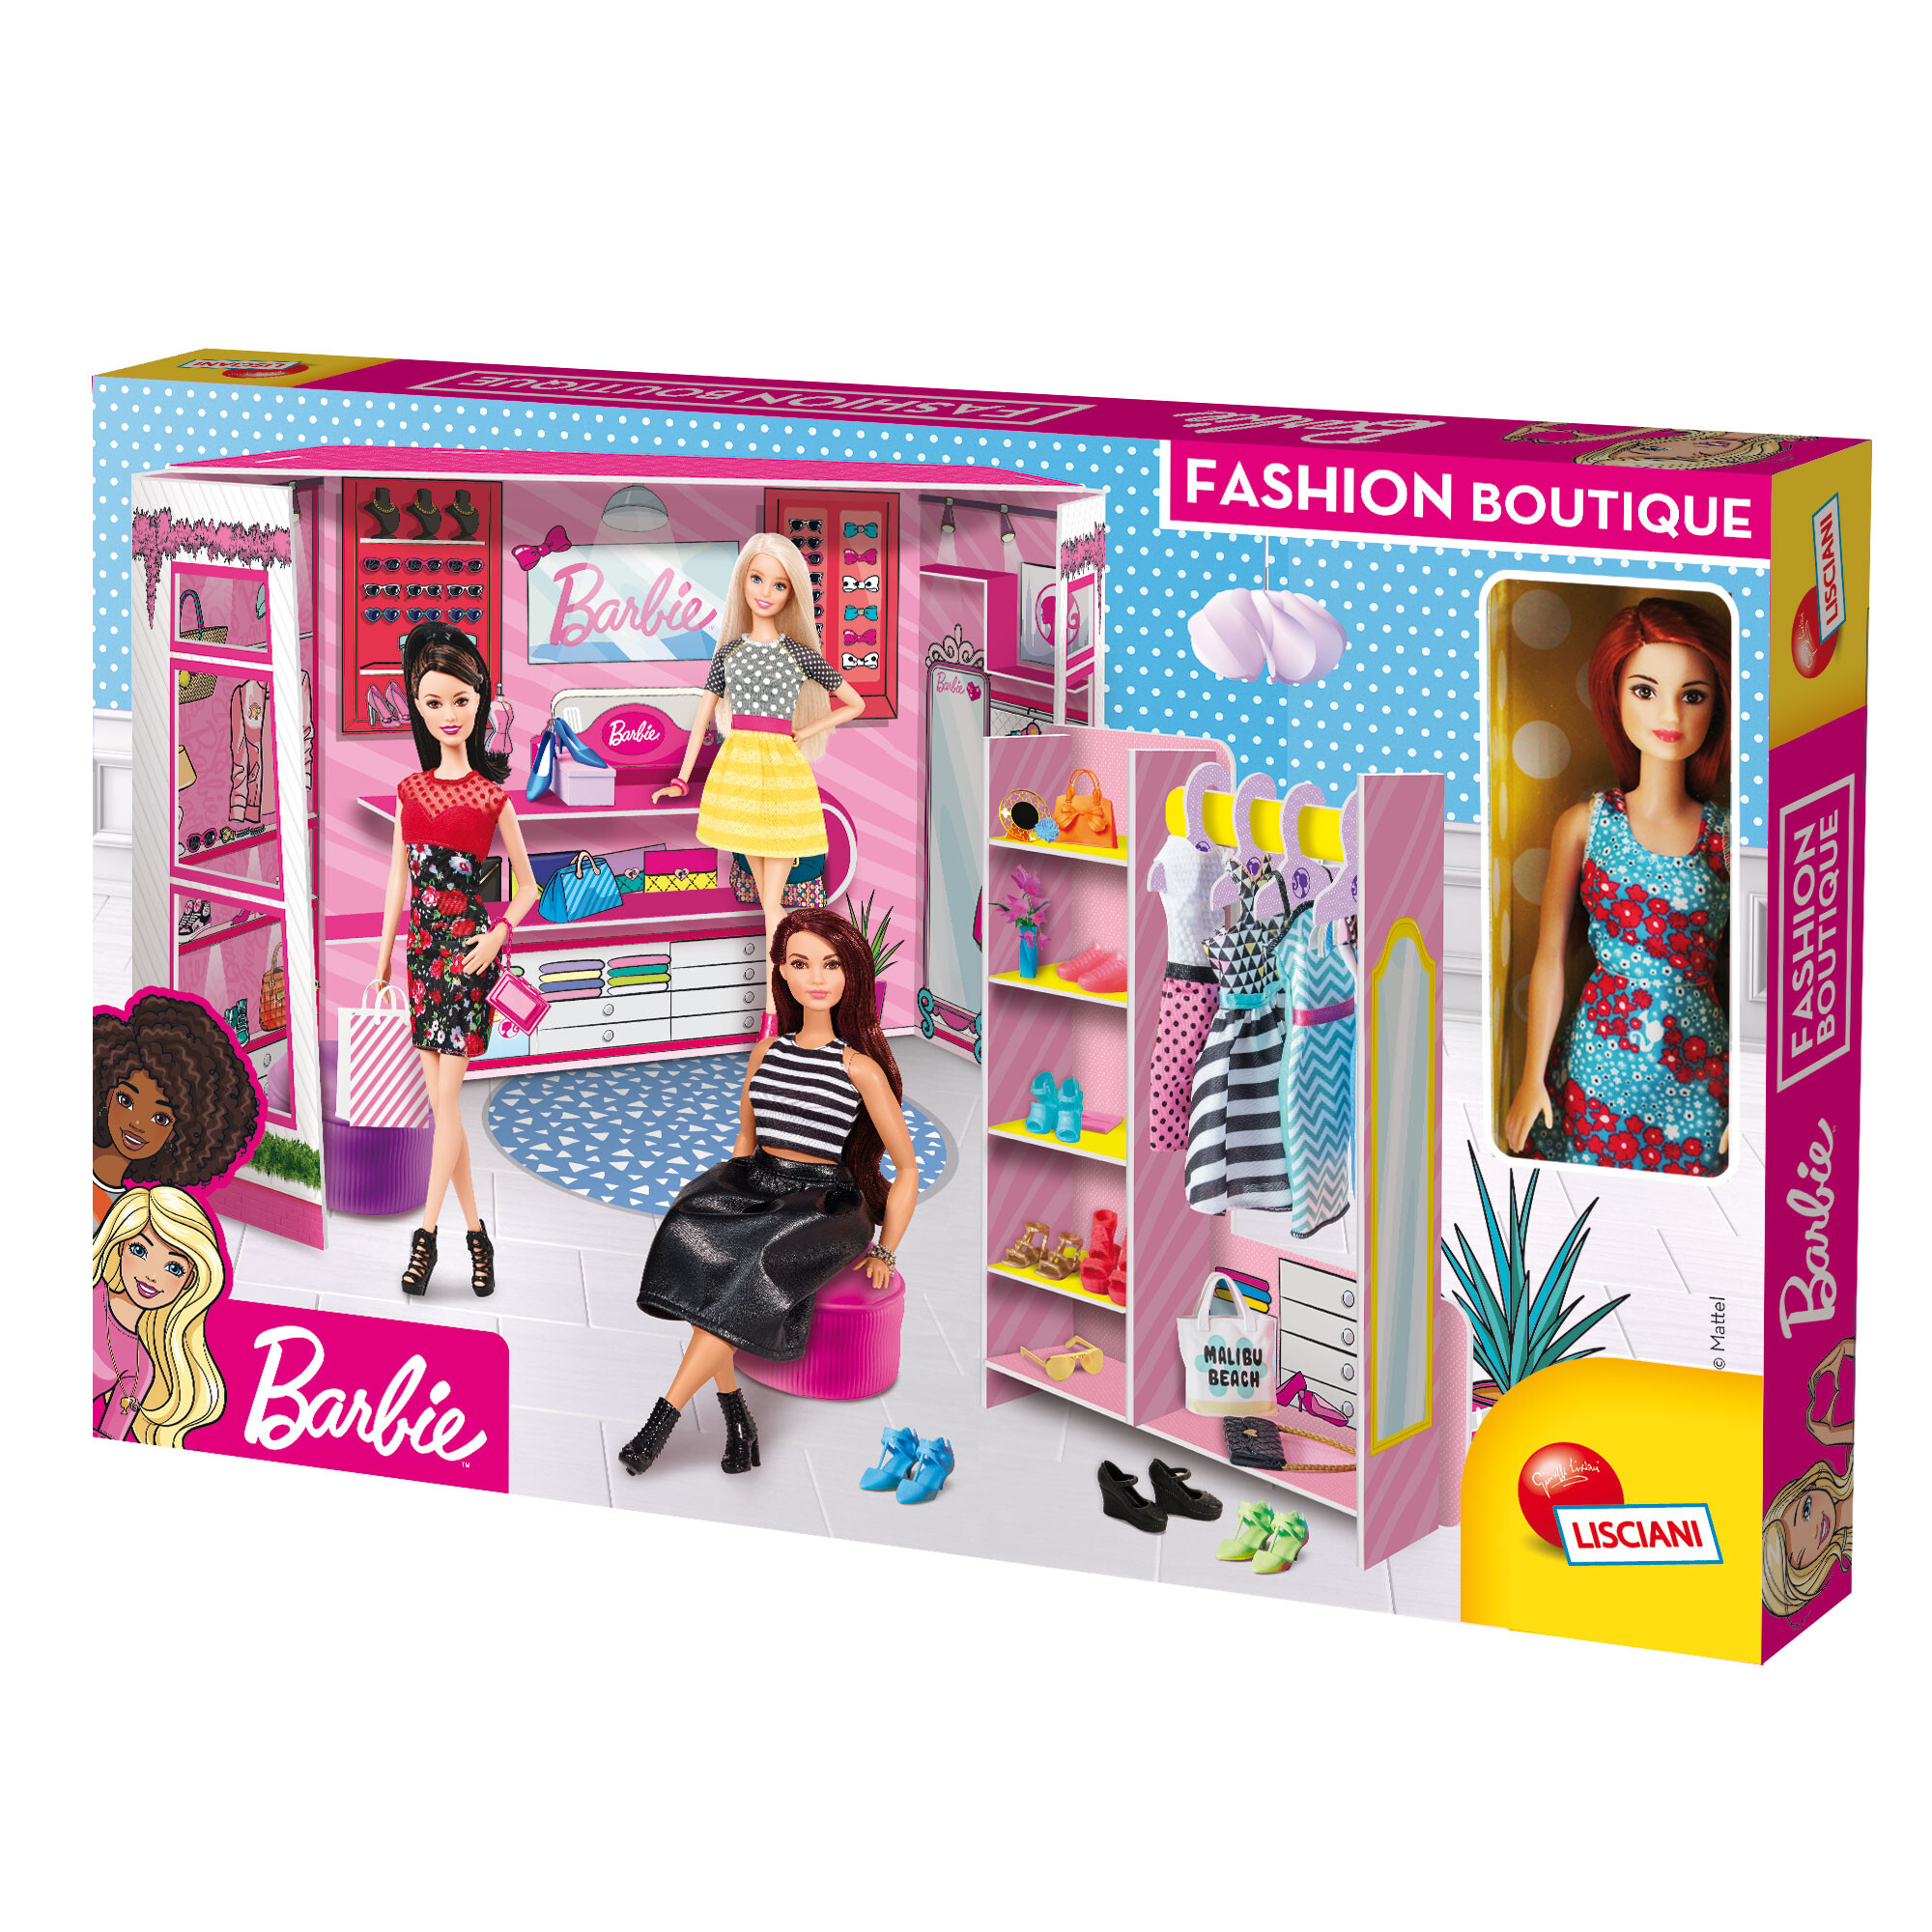 Barbie fashion boutique - LISCIANI, Barbie